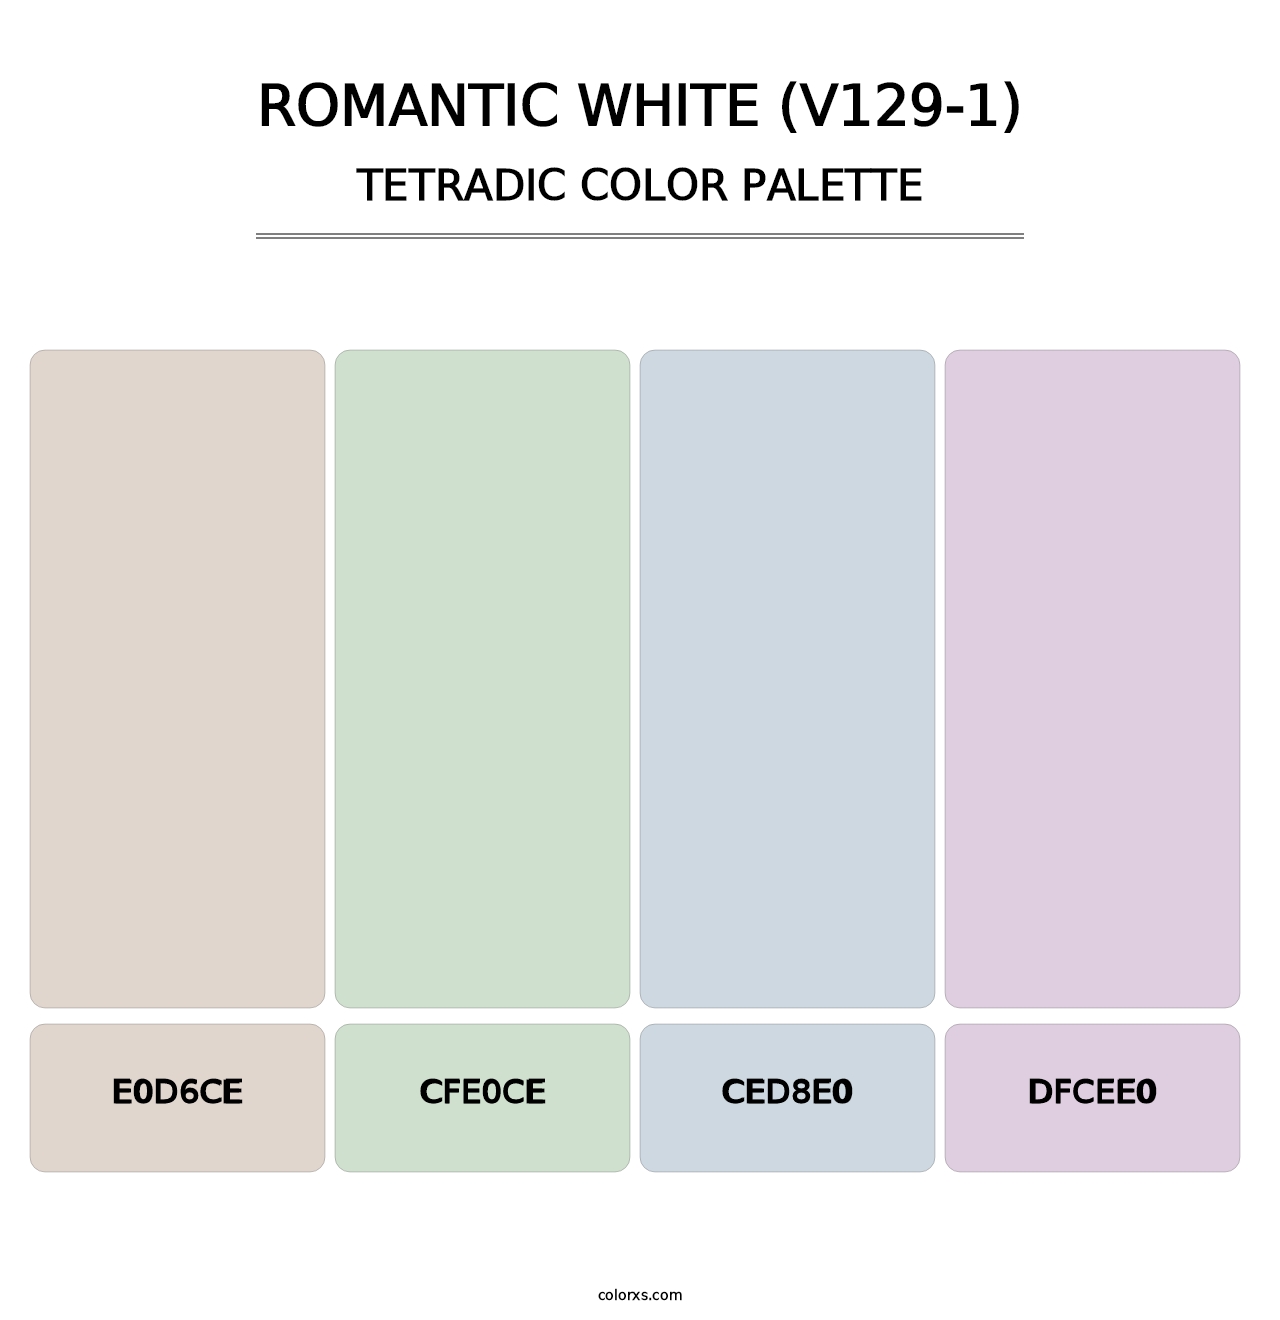 Romantic White (V129-1) - Tetradic Color Palette